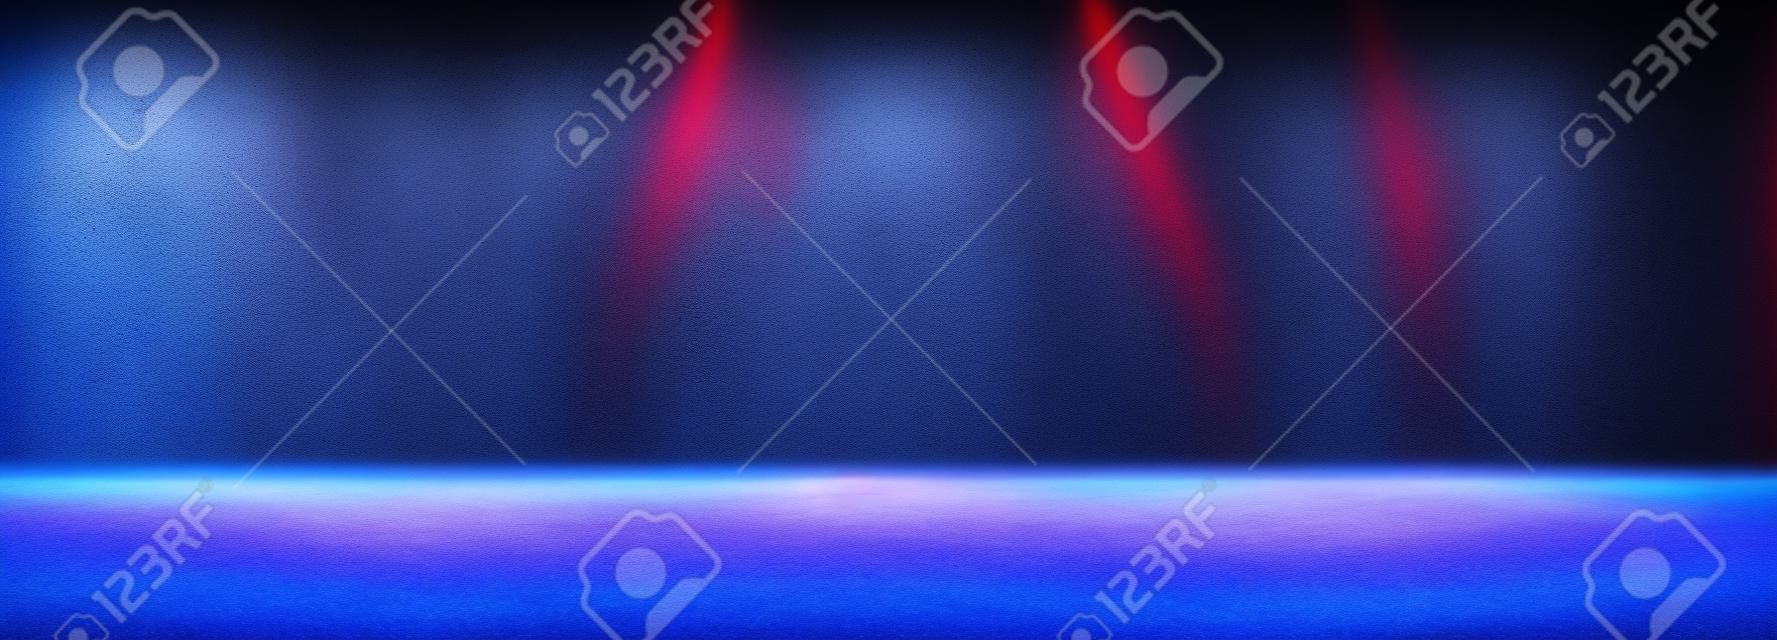 Espacio vacío de la habitación oscura Studio con niebla o neblina y efecto de iluminación rojo y azul sobre fondo degradado de suelo de hormigón.